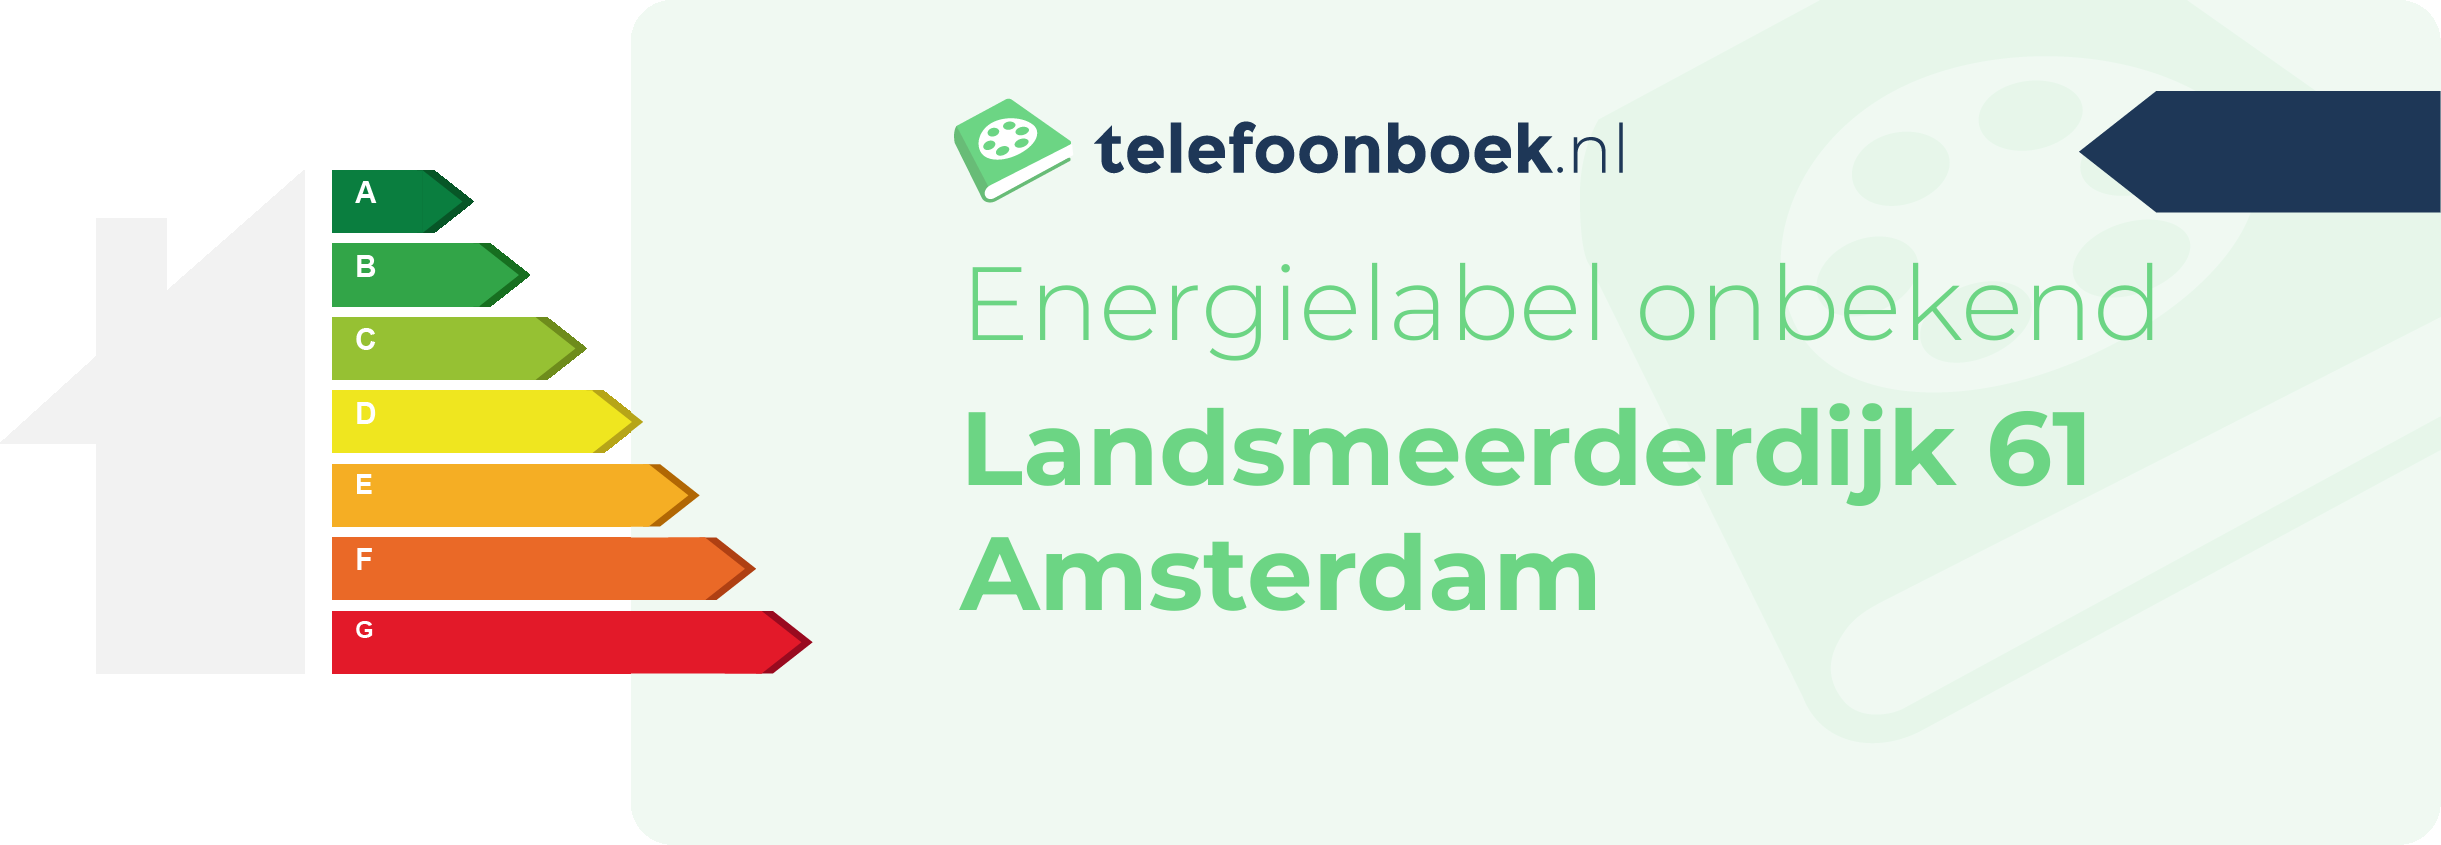 Energielabel Landsmeerderdijk 61 Amsterdam